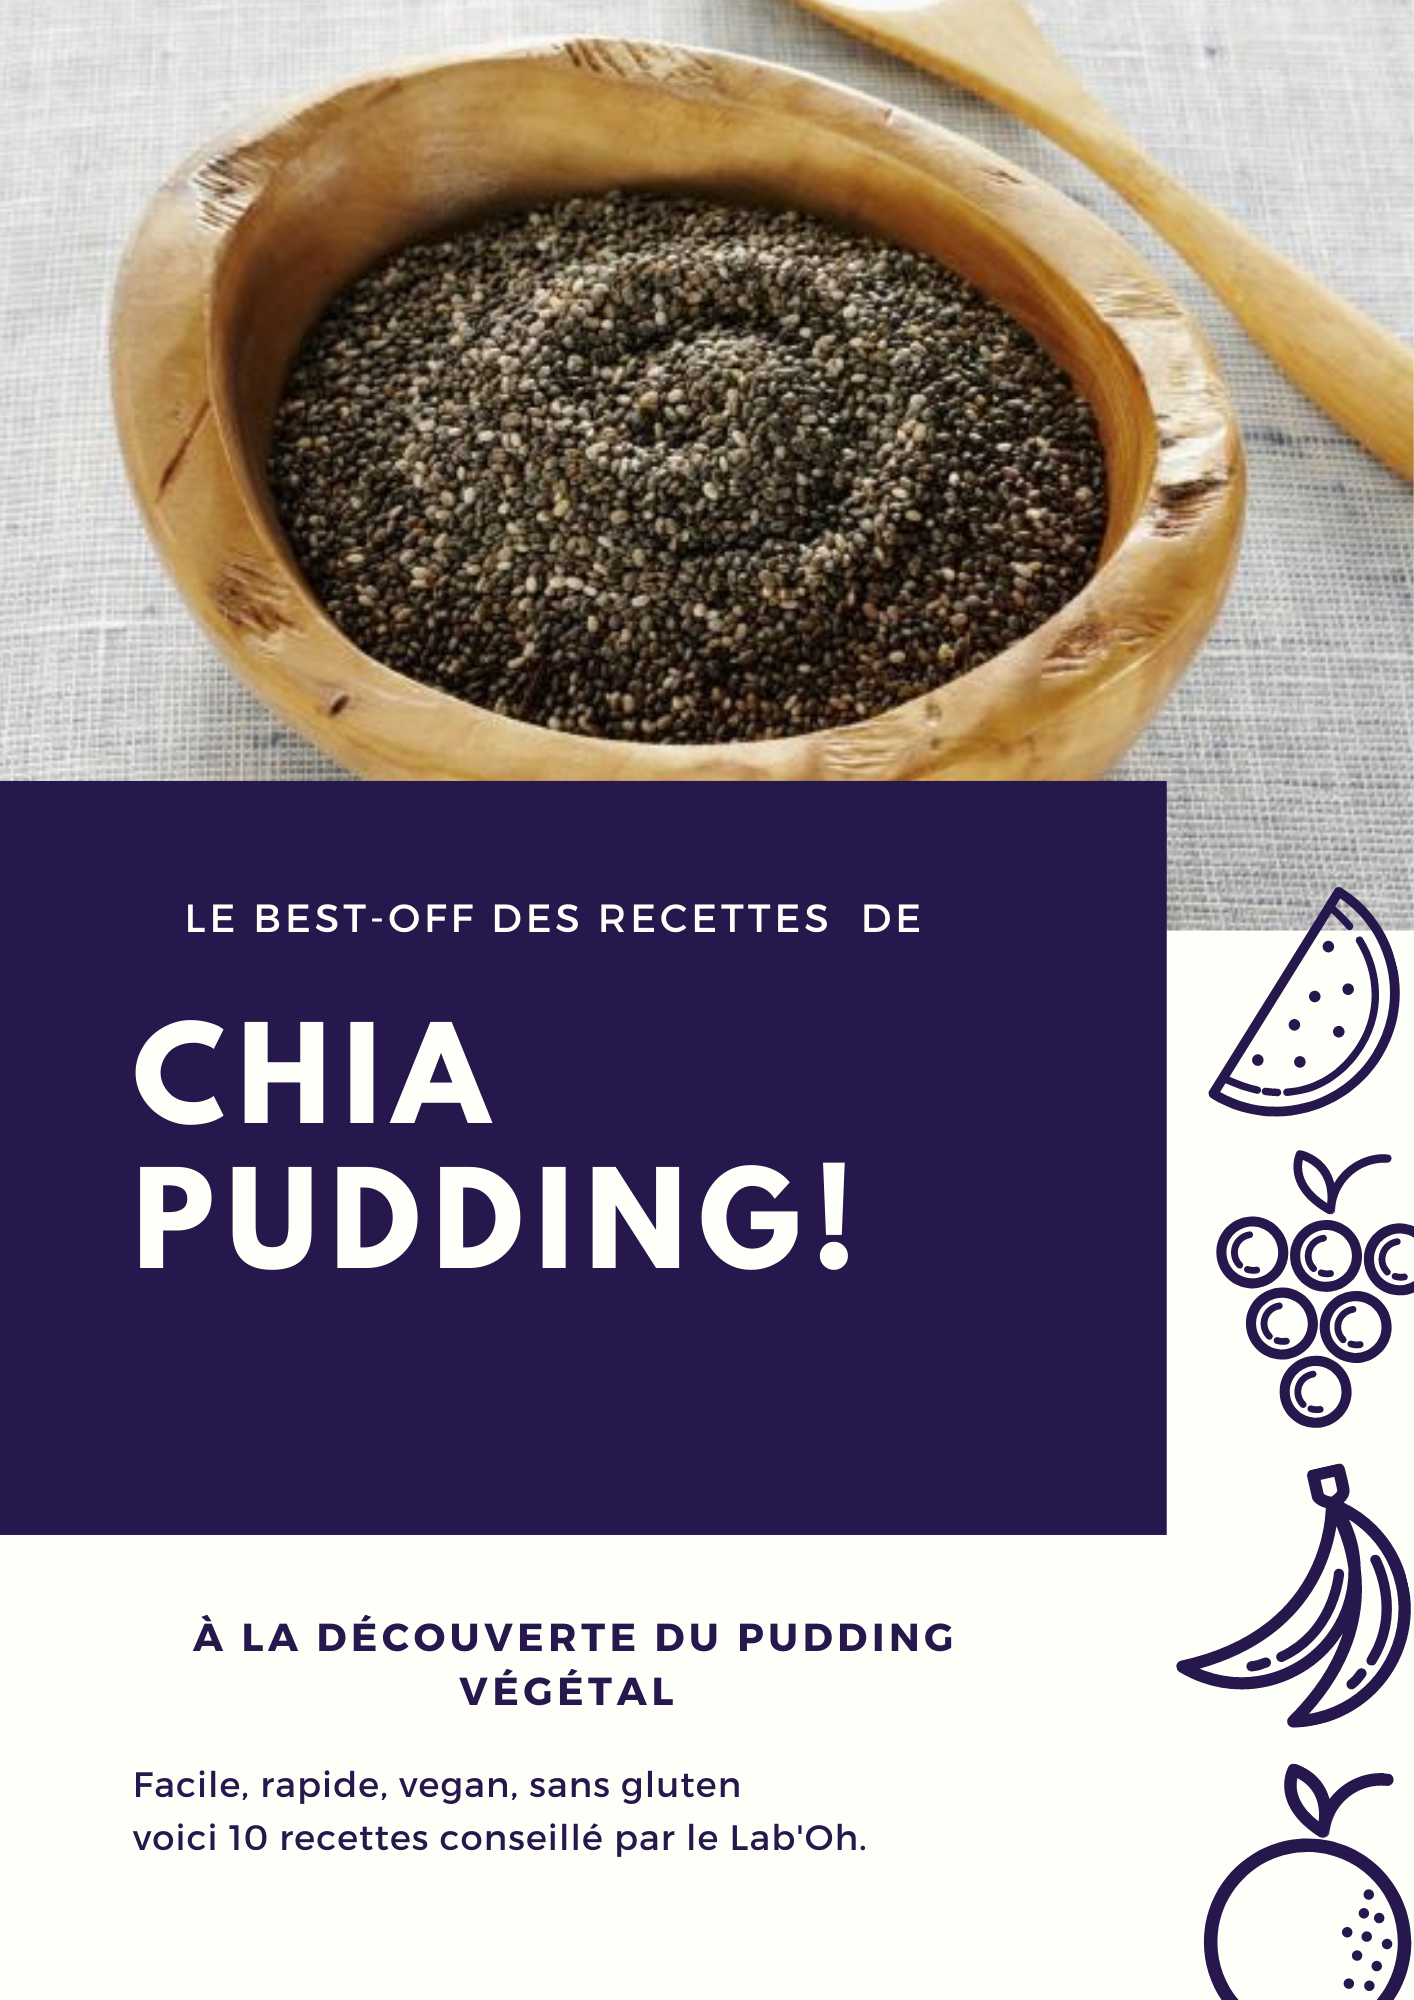 Les recettes de Chia pudding du Lab'Oh